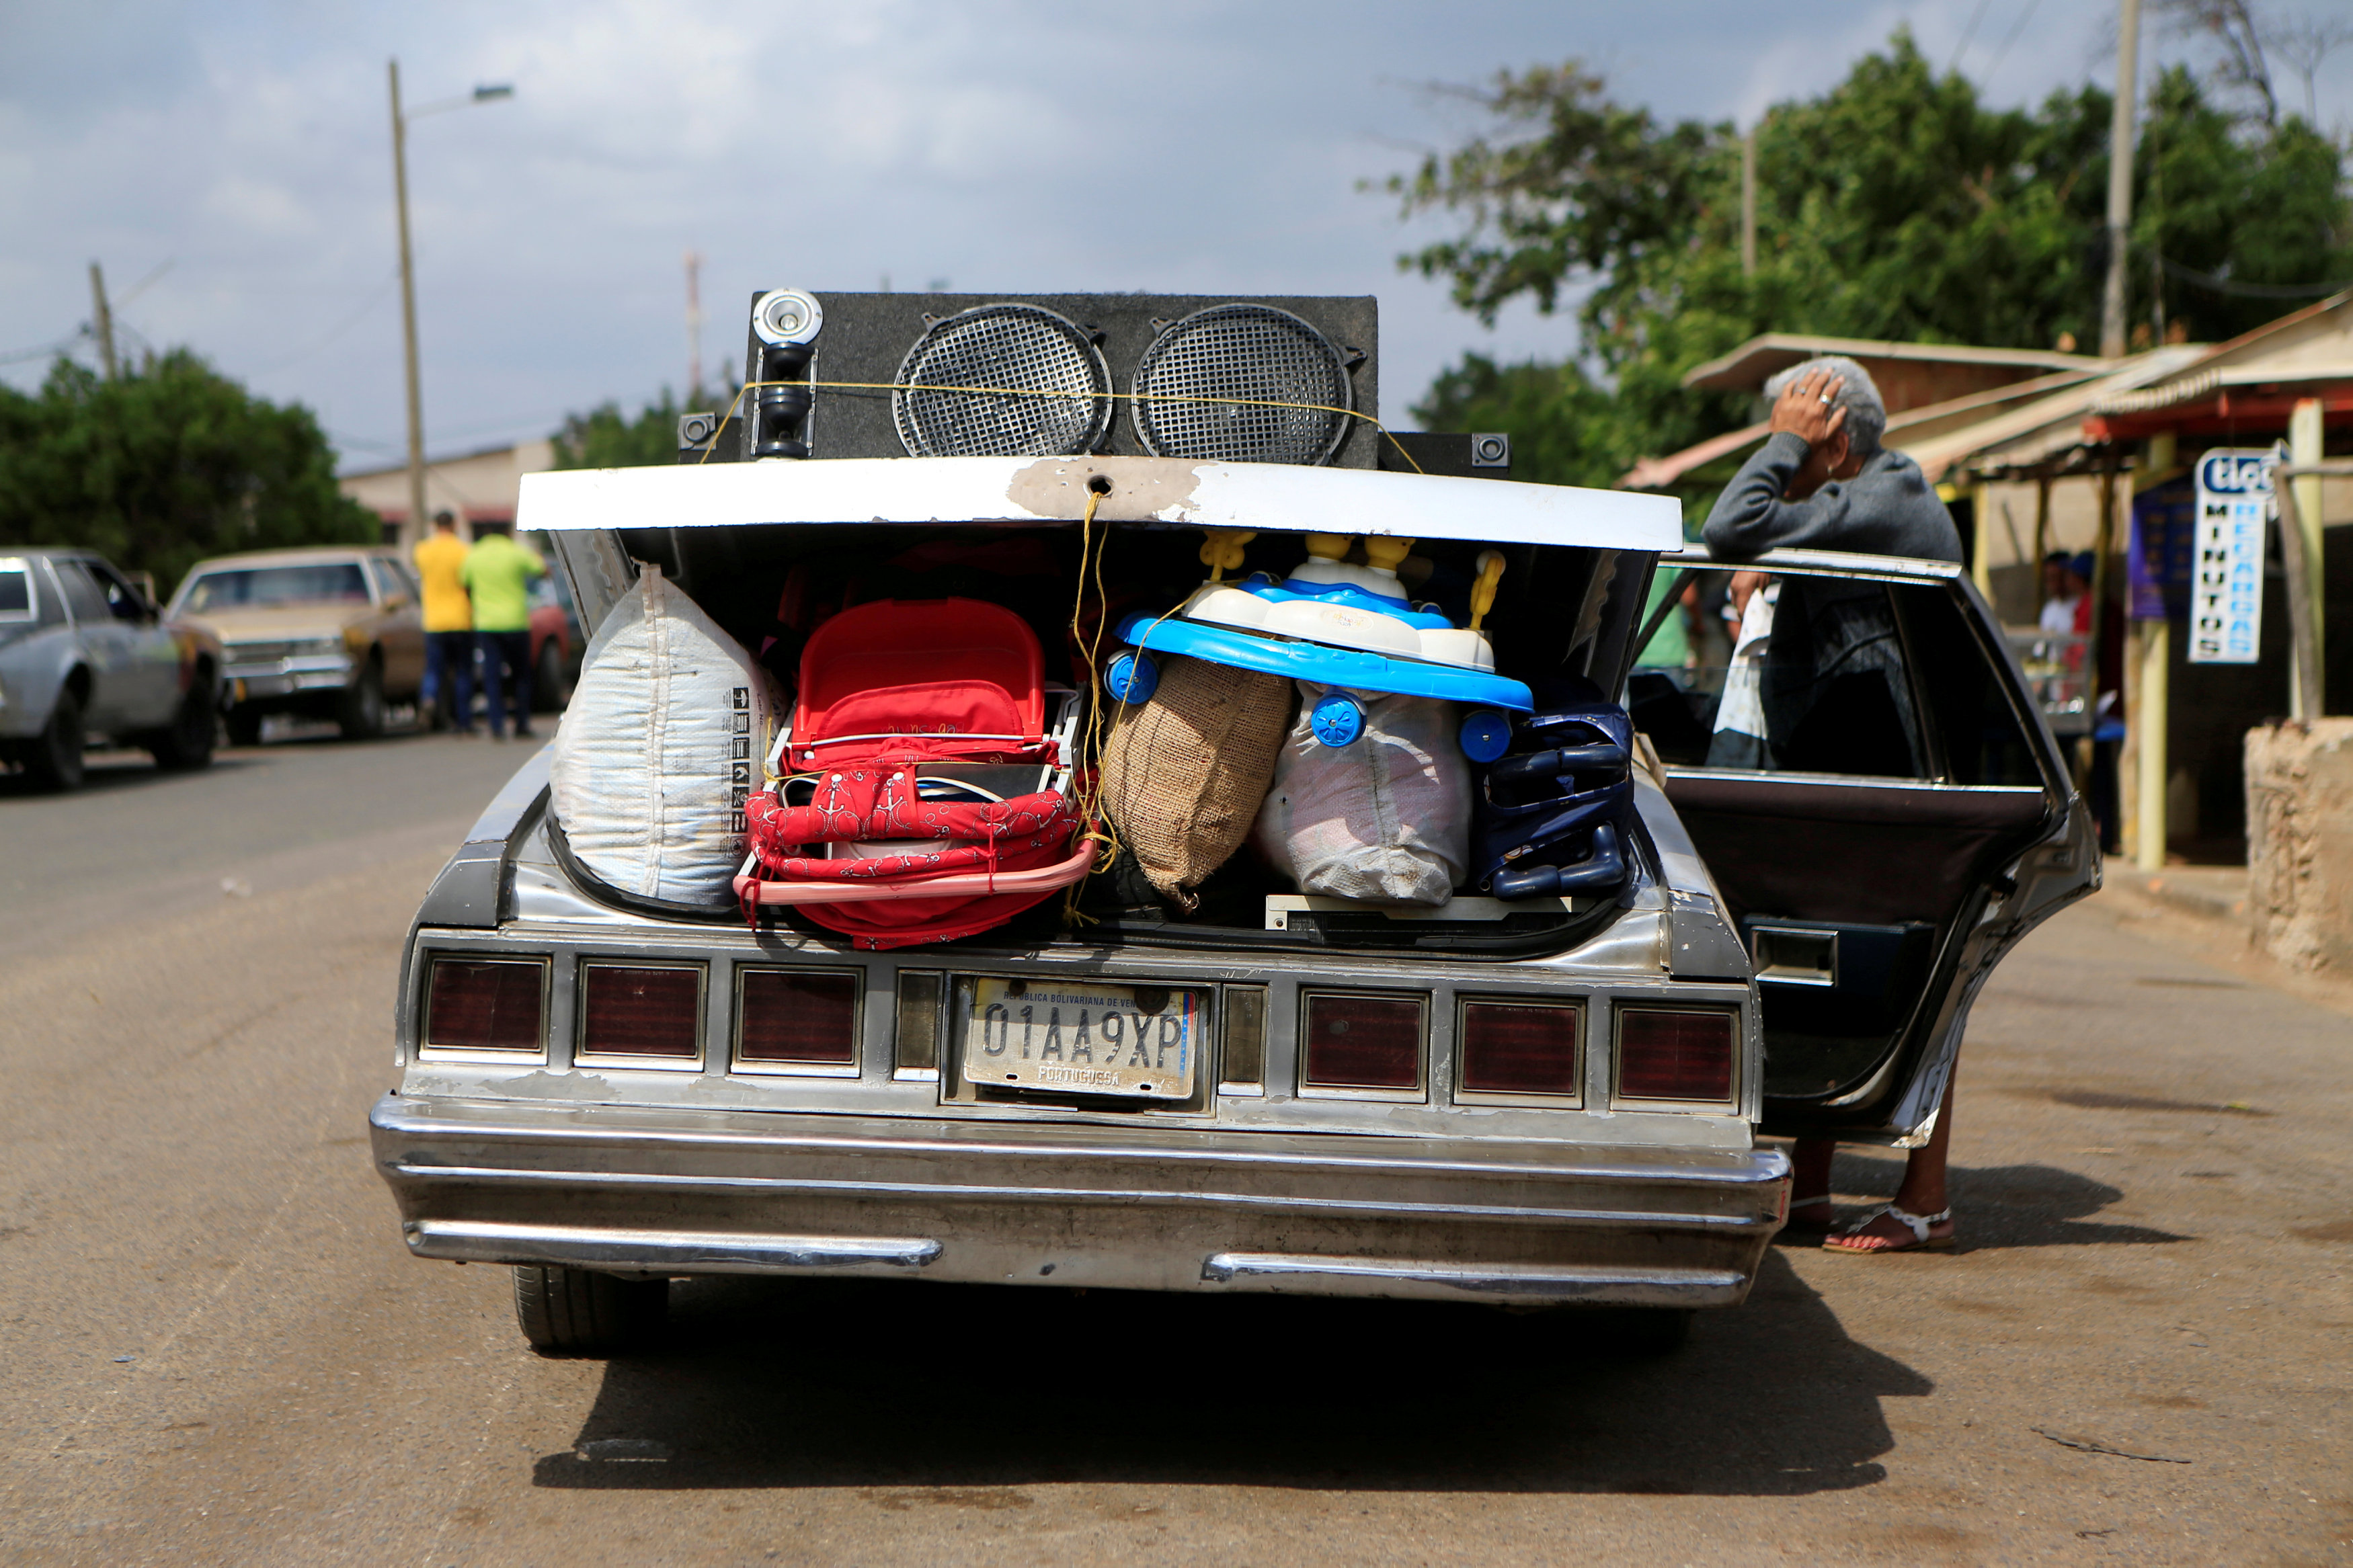 ¿Cuántos venezolanos han cruzado la frontera? Colombia está llevando la cuenta